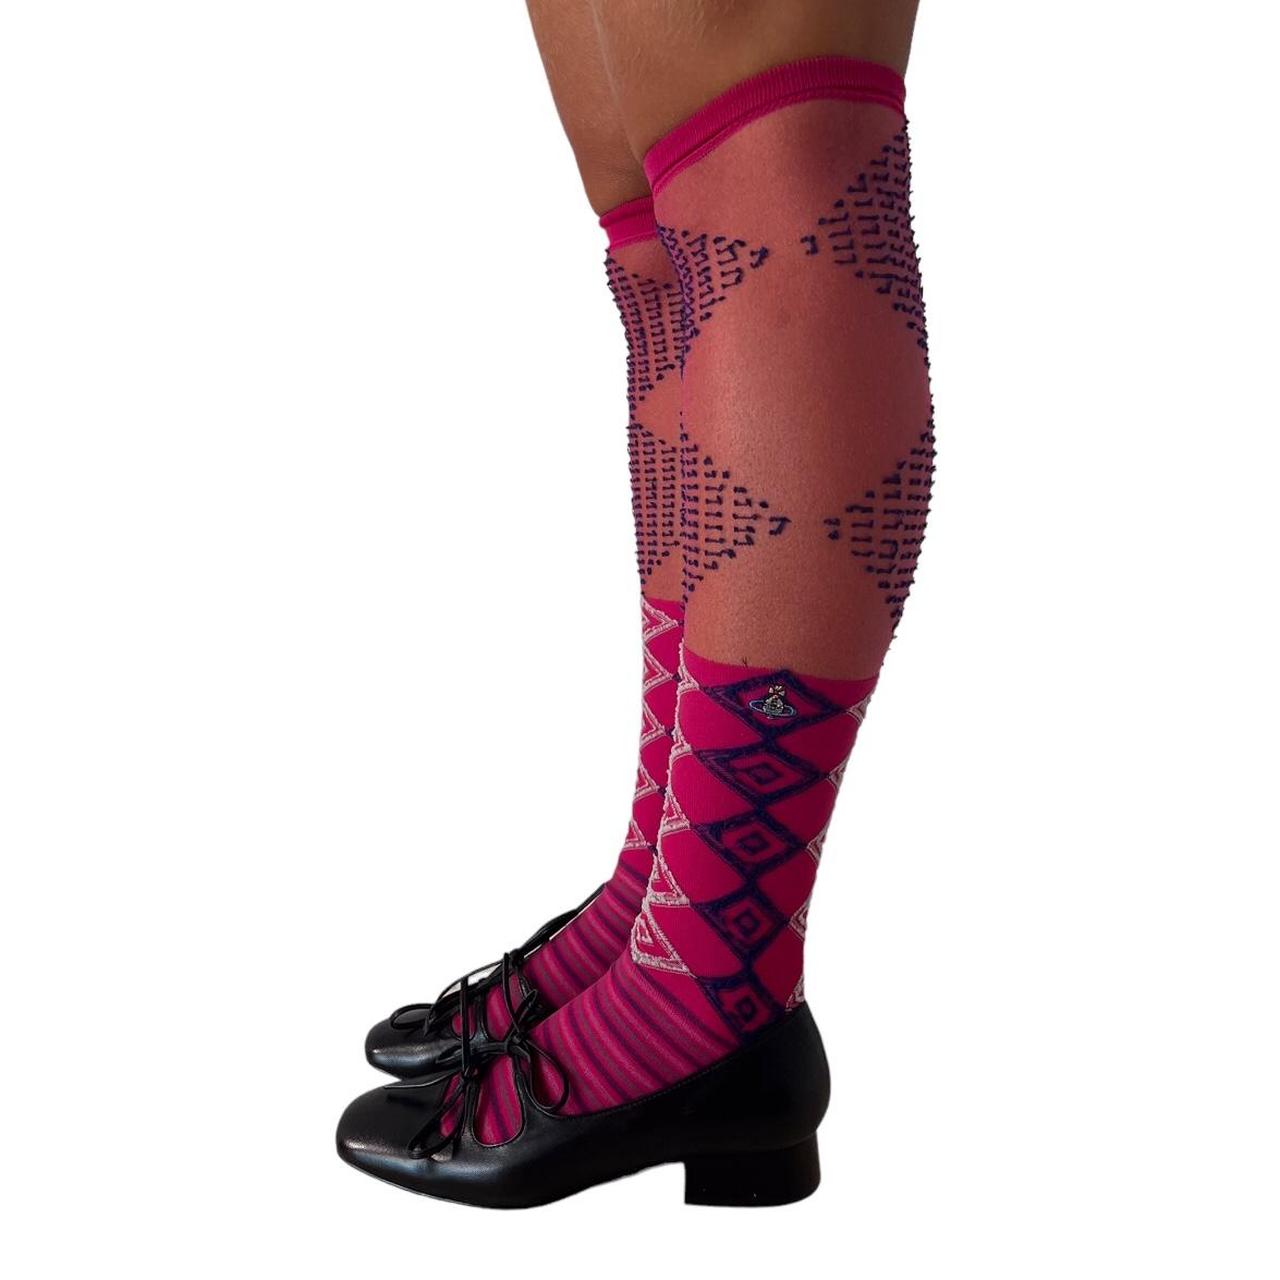 Vivienne Westwood preppy pink argyle high socks Pink... - Depop